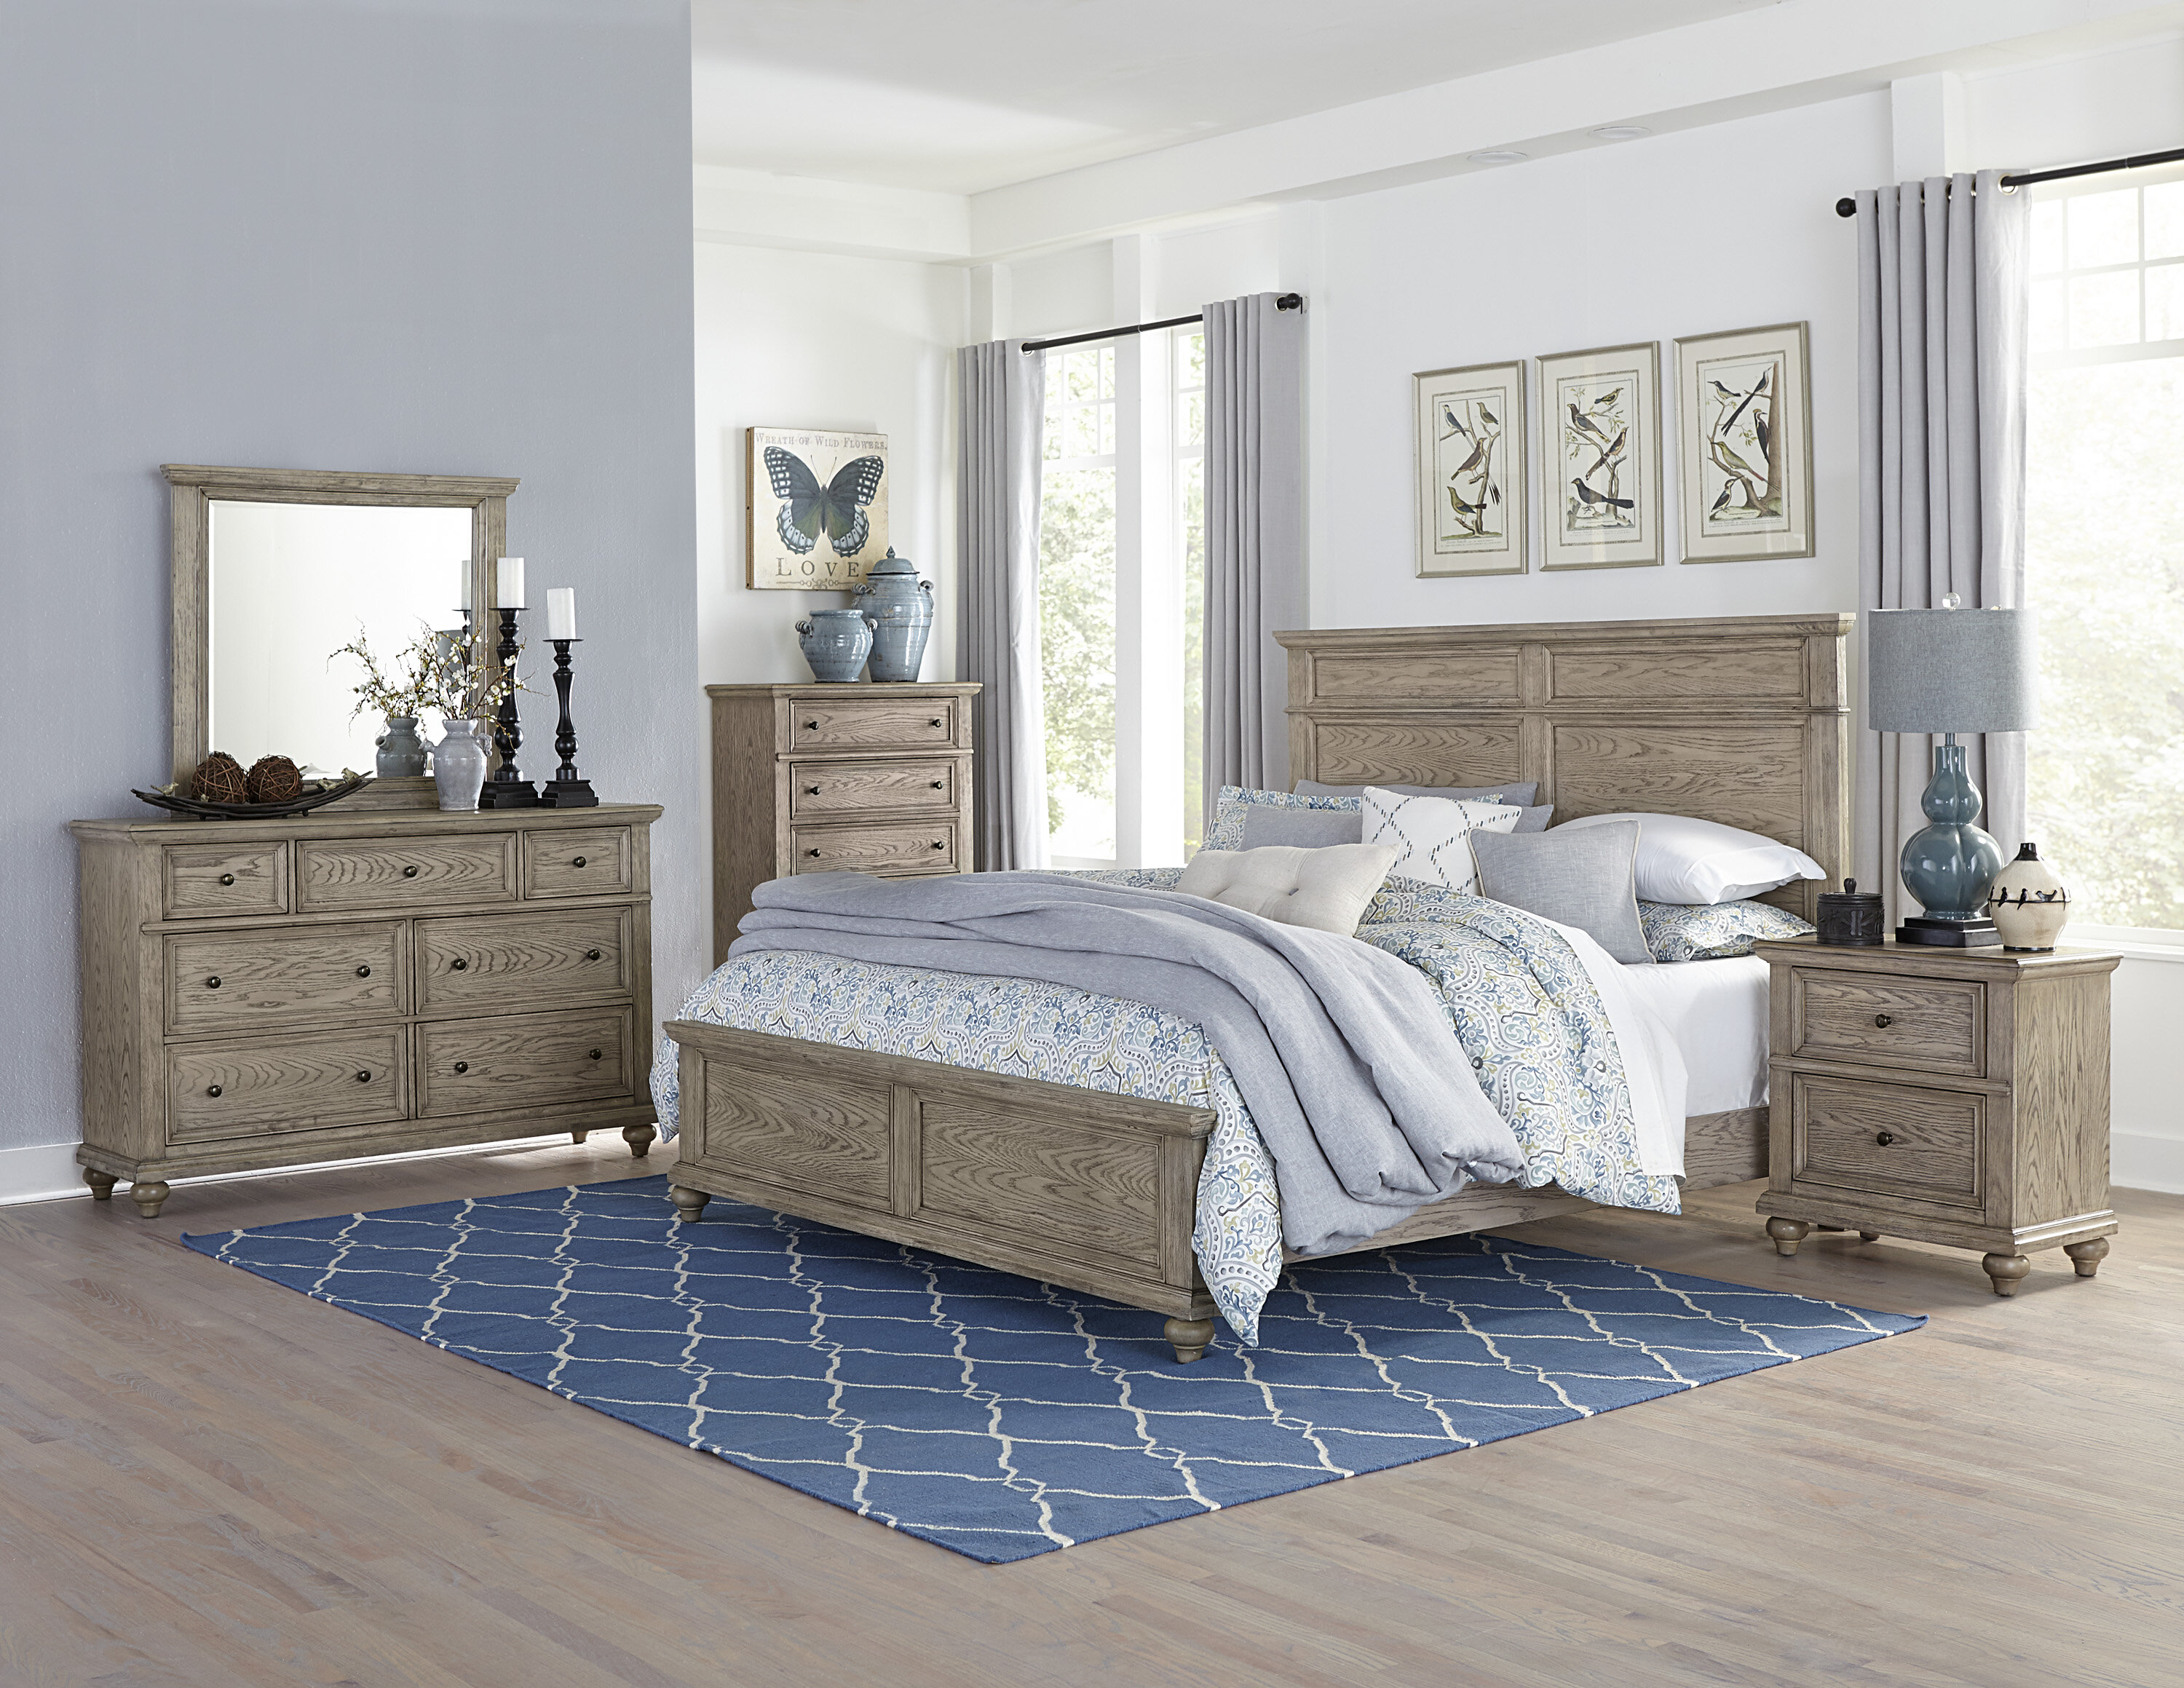 solid wood queen bedroom furniture